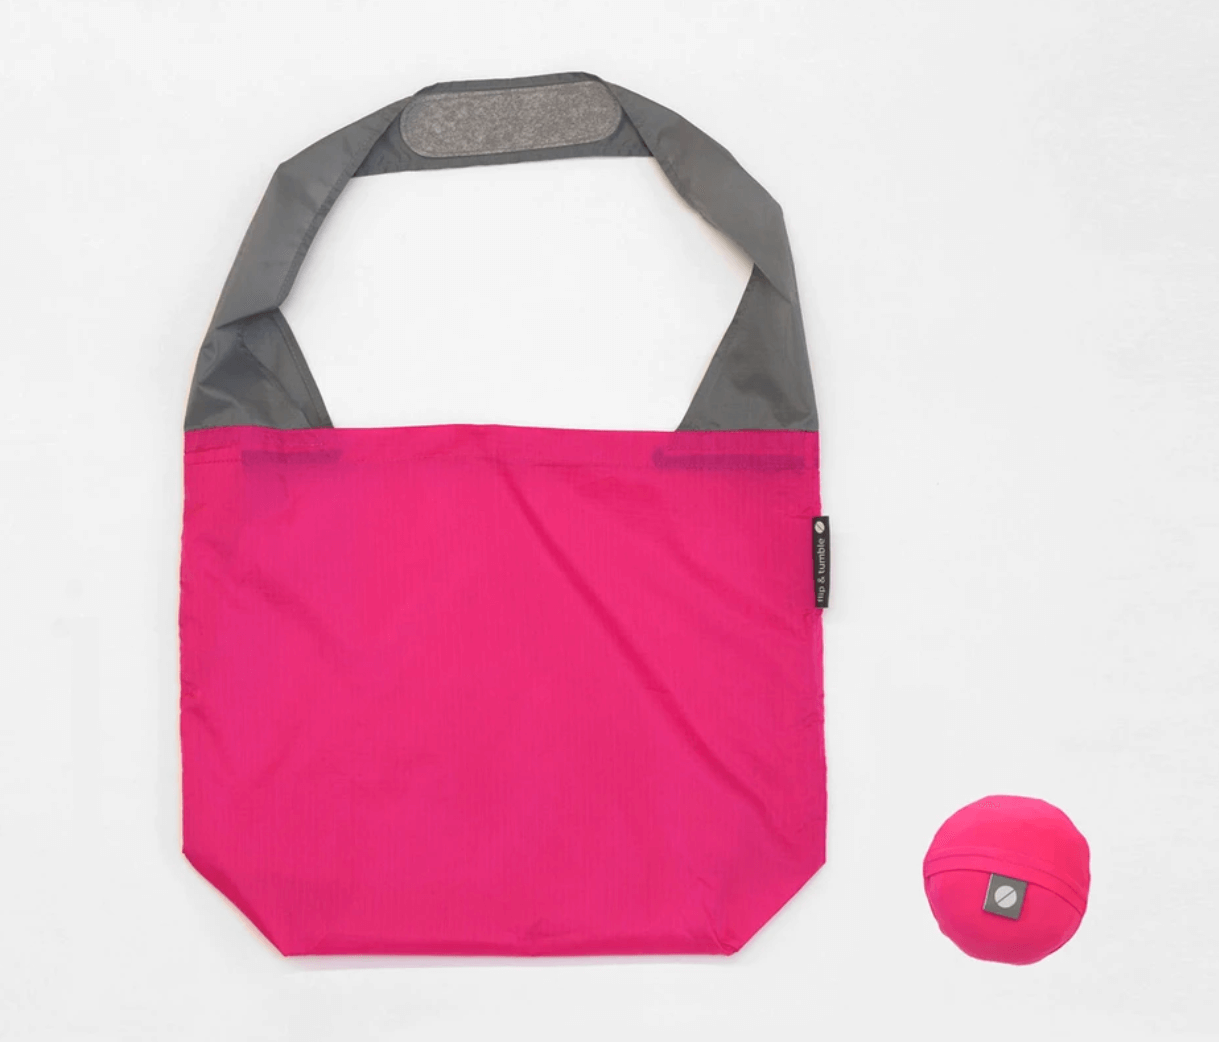 Best Over-the-Shoulder Bag: Flip & Tumble 24/7 Bag